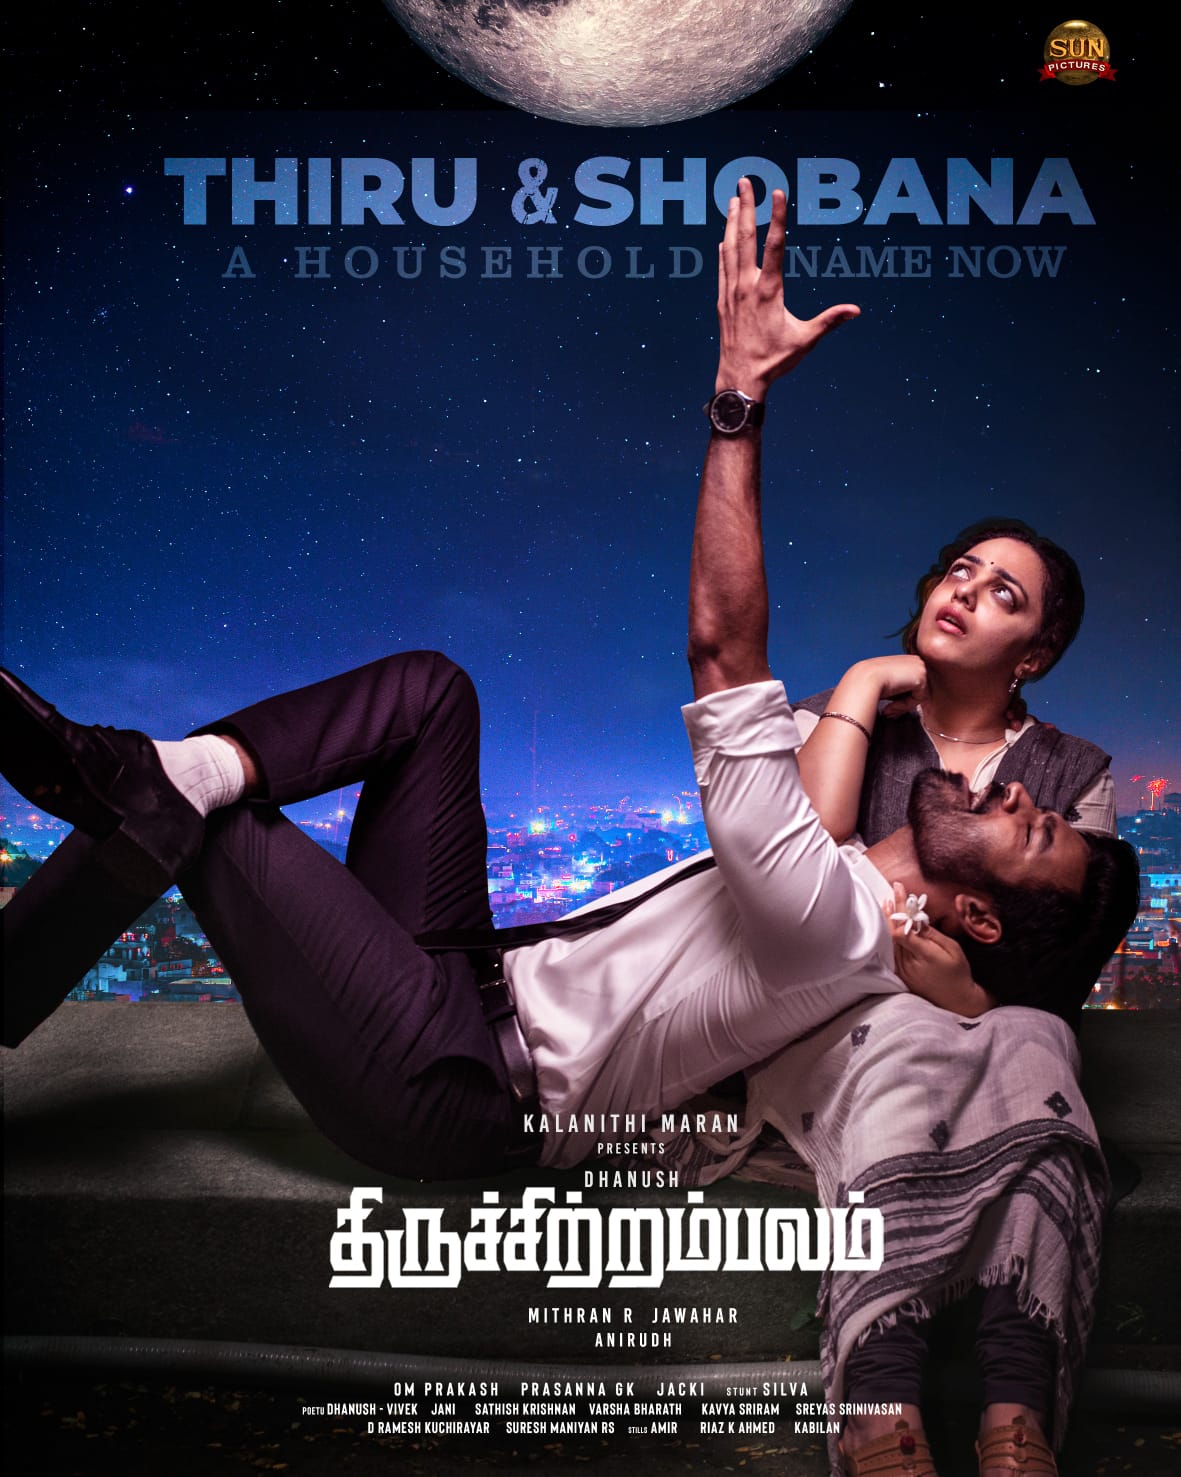 Dhanush Thiruchitrambalam Movie USA Box Office Collection